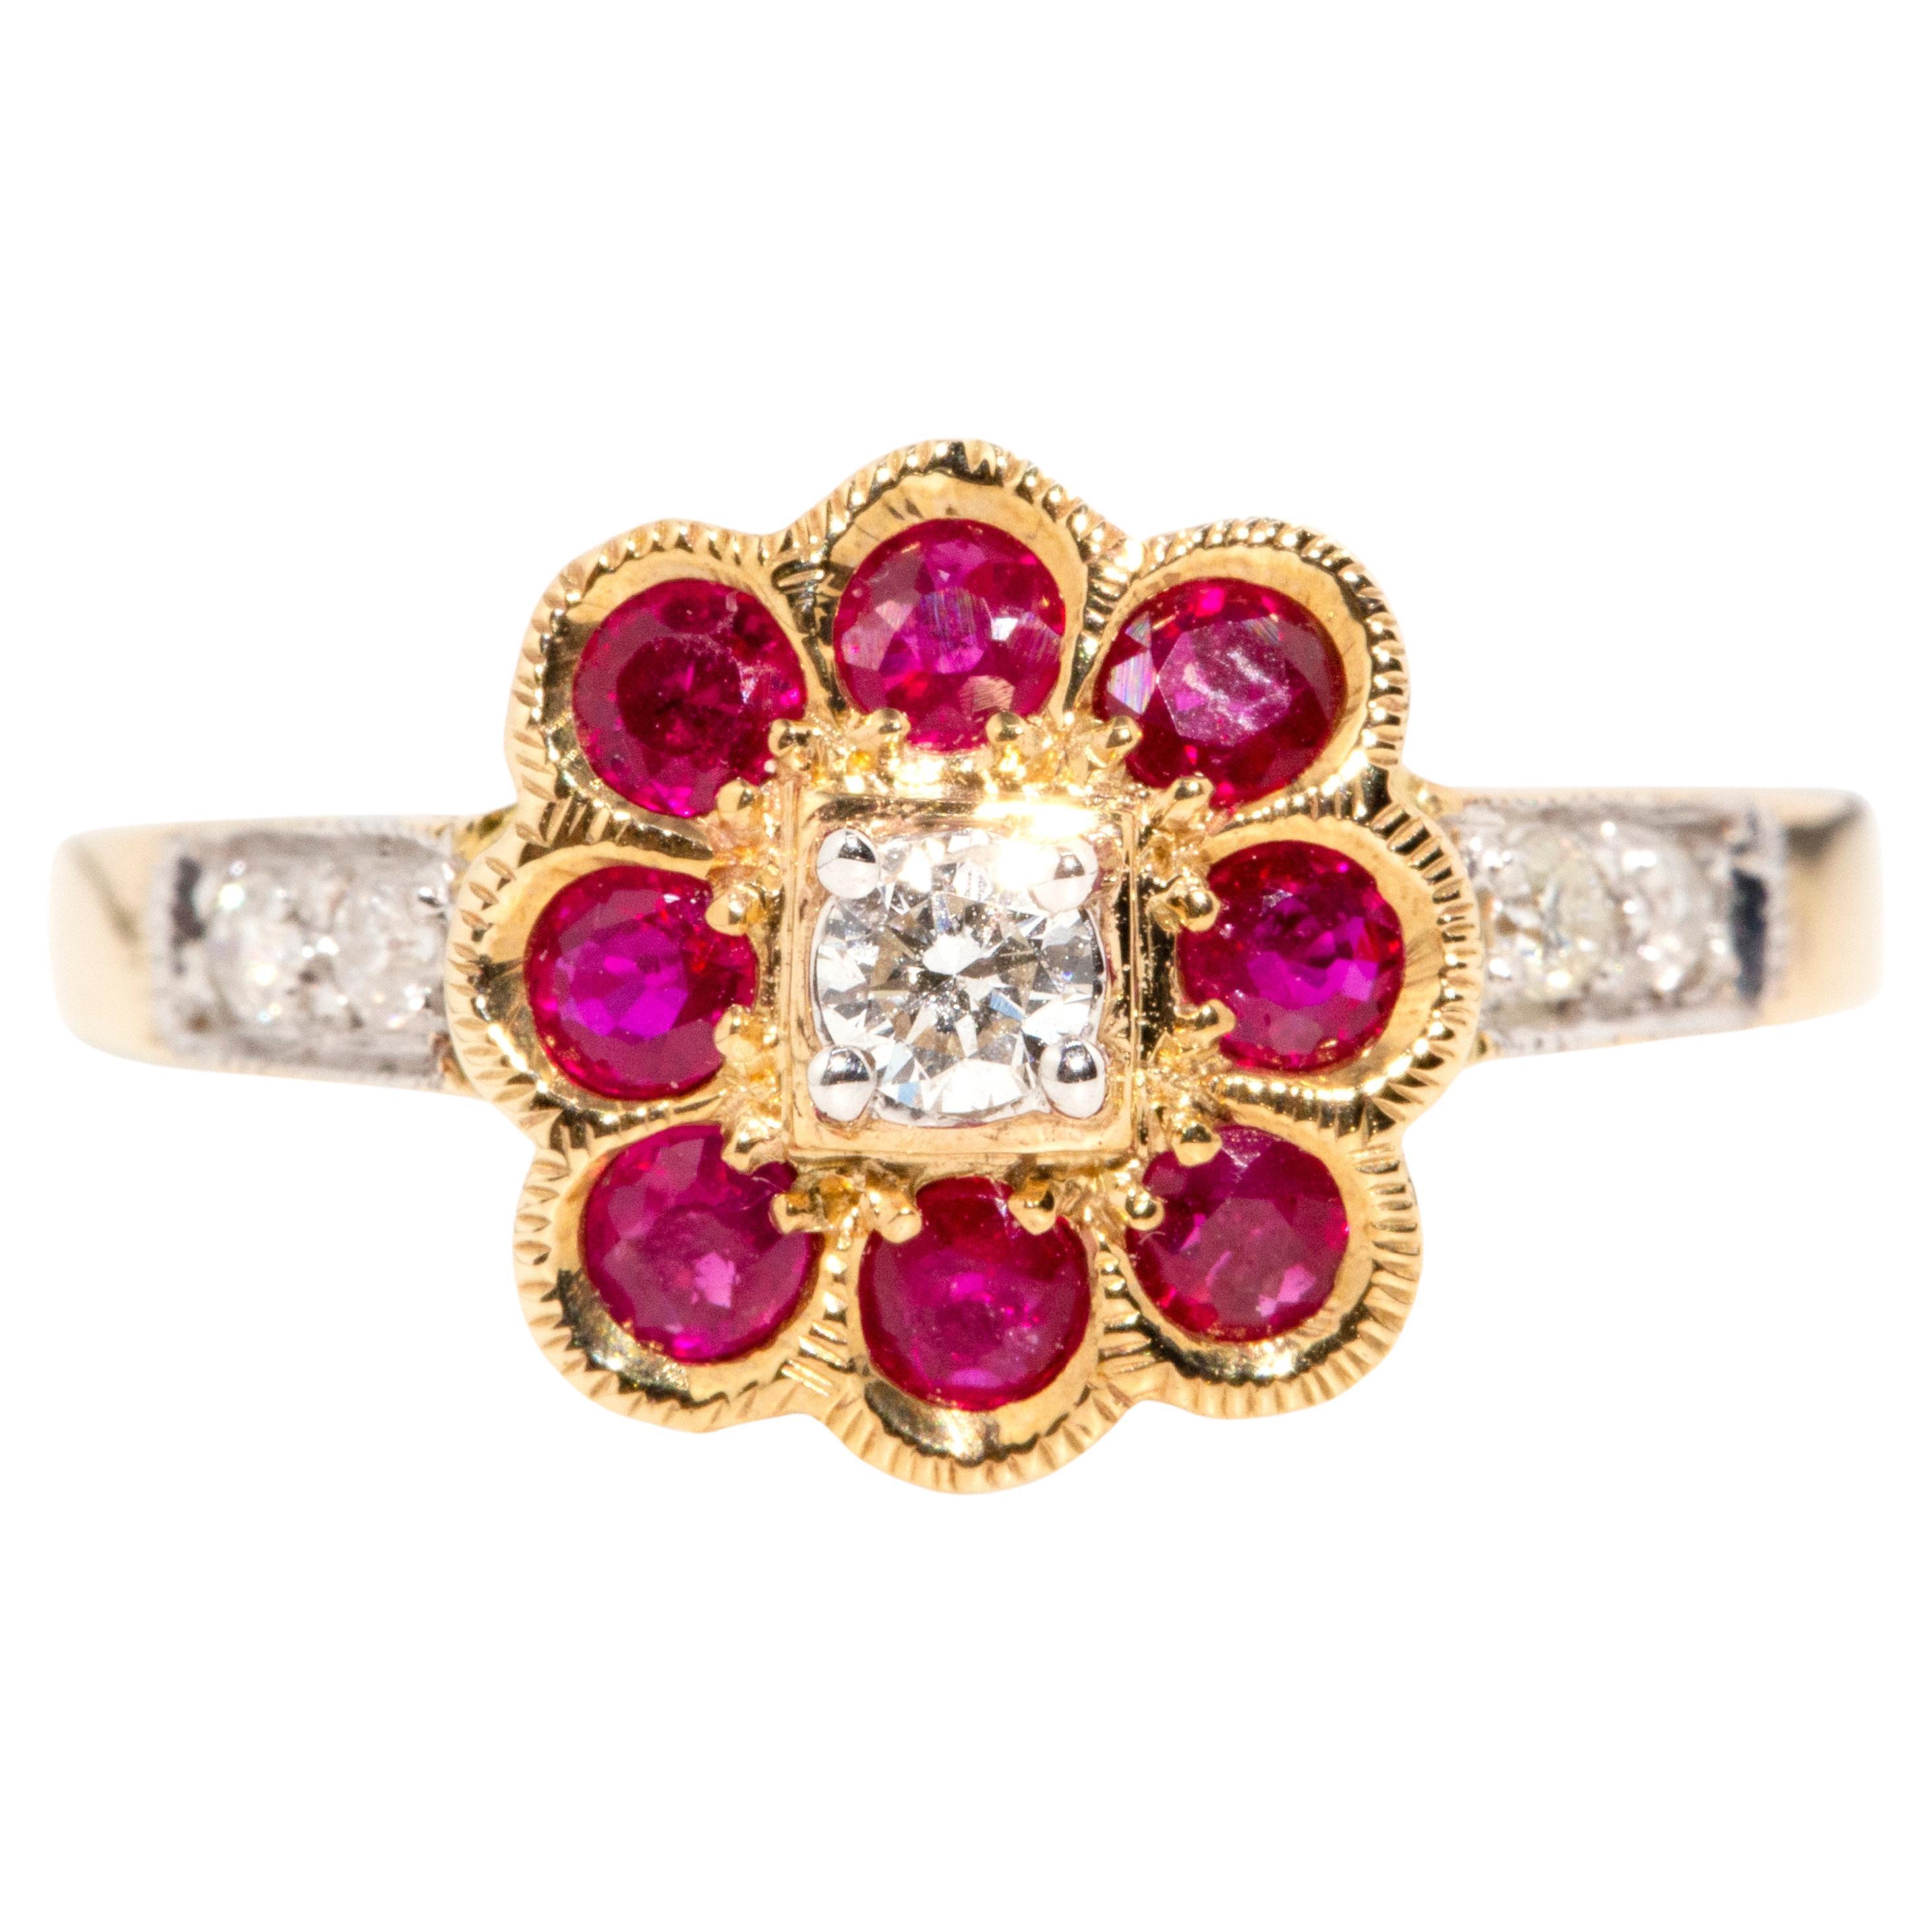 Bague d'inspiration vintage en or jaune 9 carats, rubis rouge profond et diamants